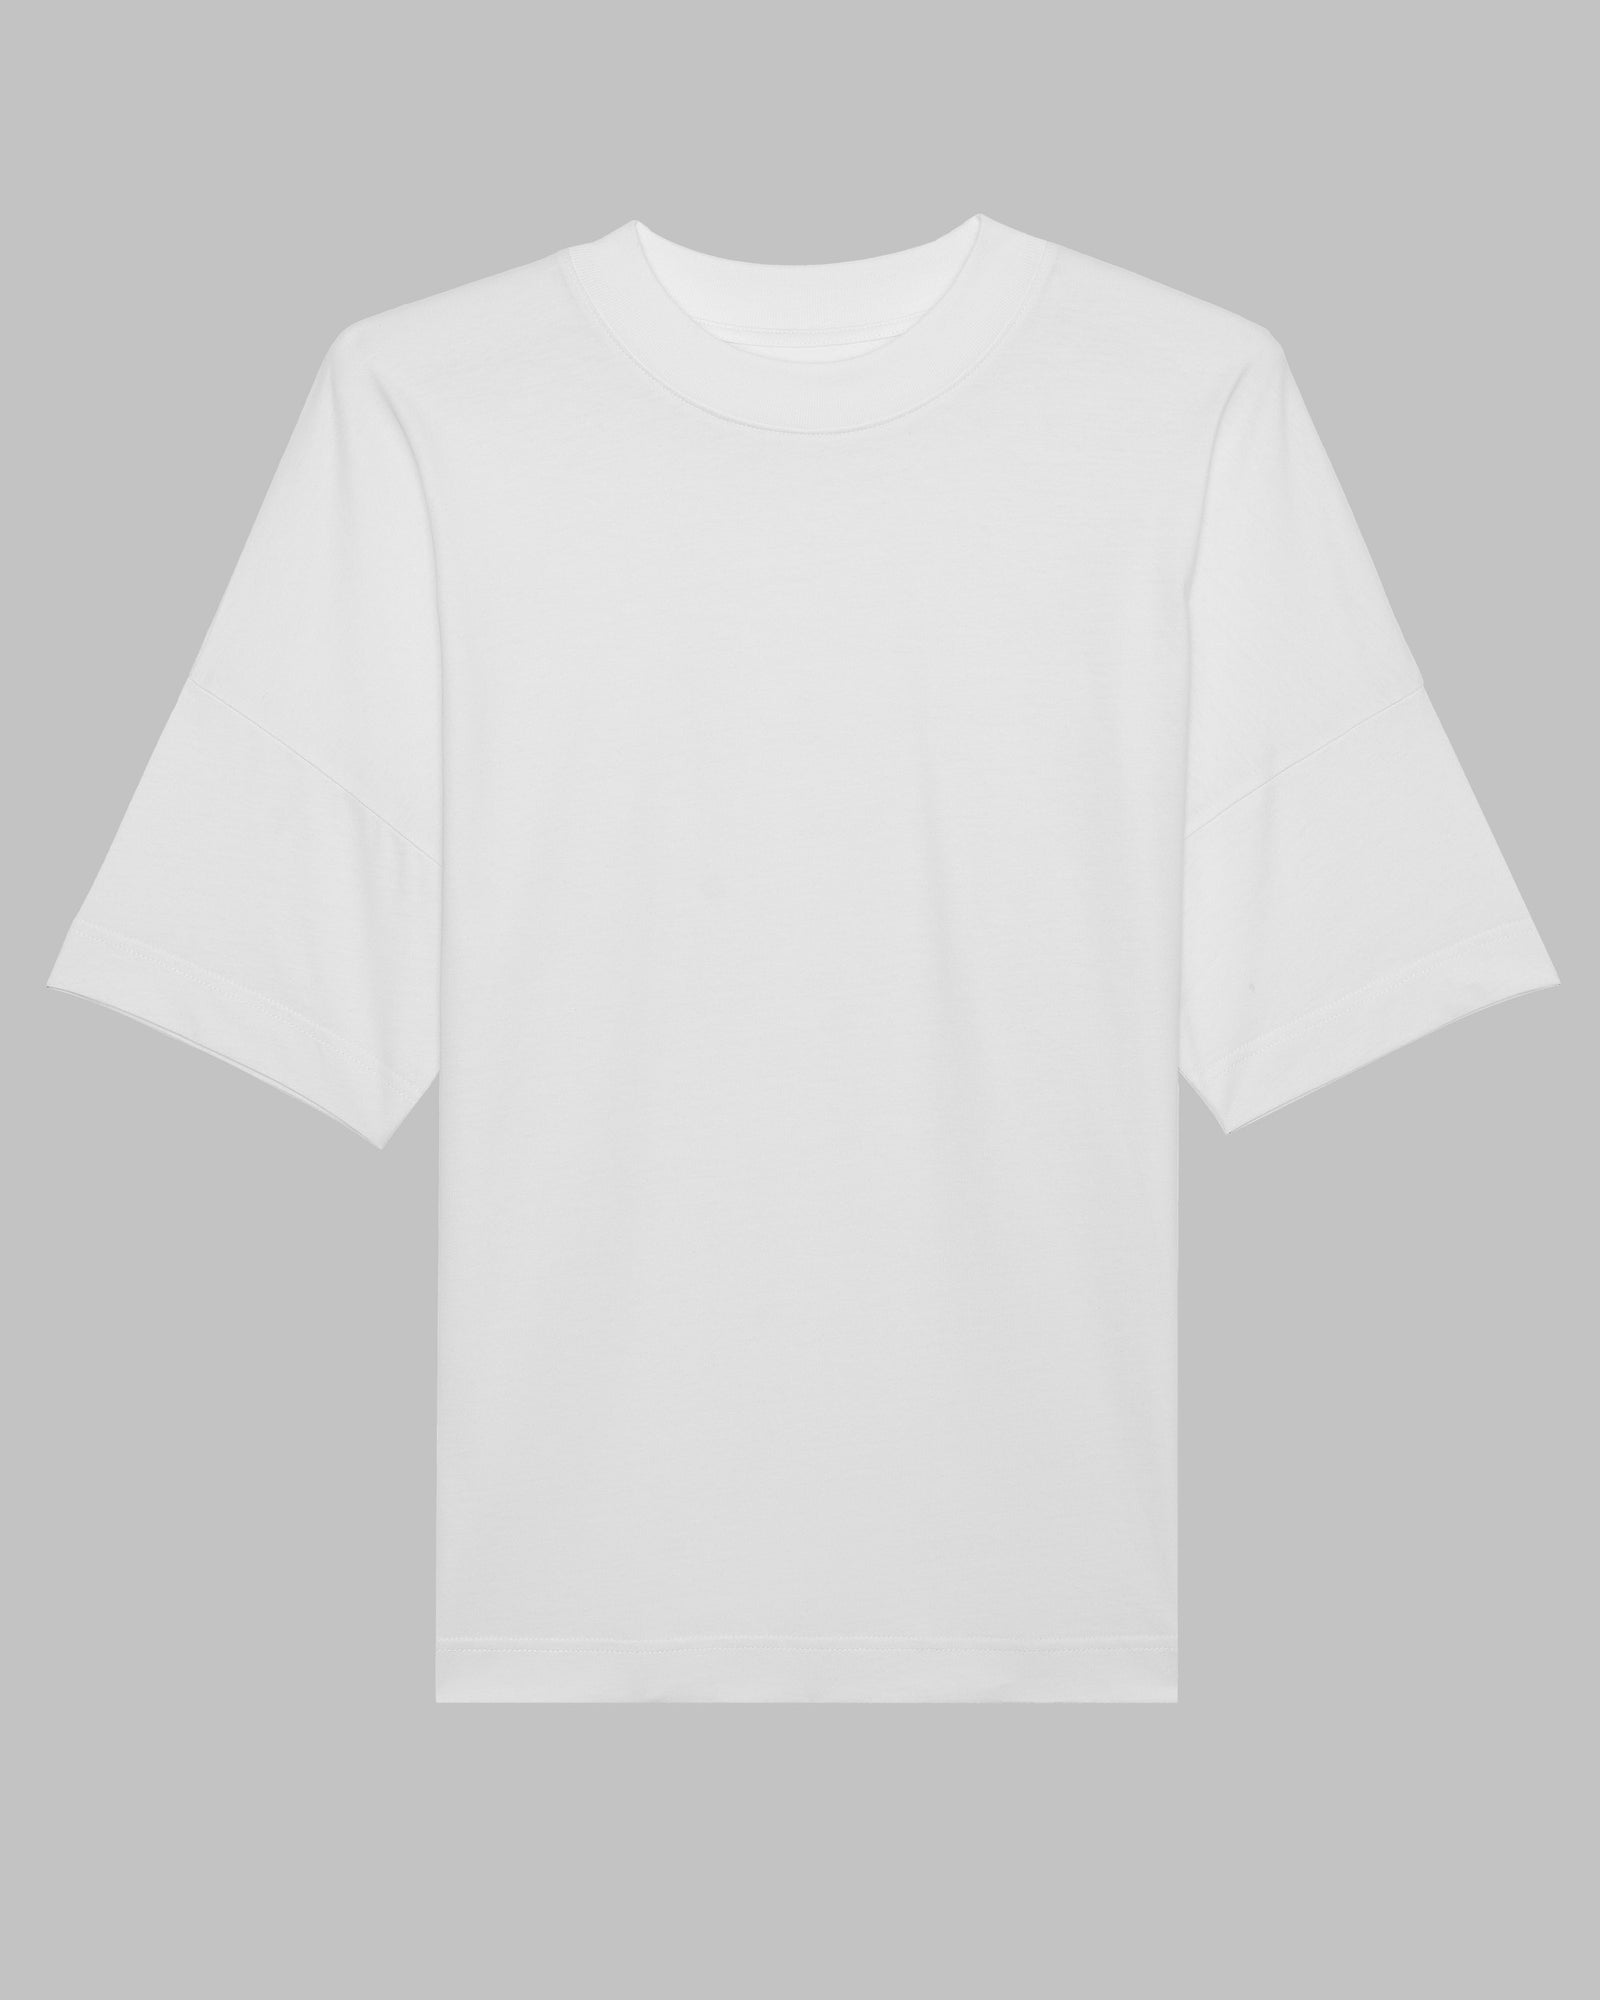 Ich liebe es, wenn meine Frau mich zocken lässt | 3-Style T-Shirt